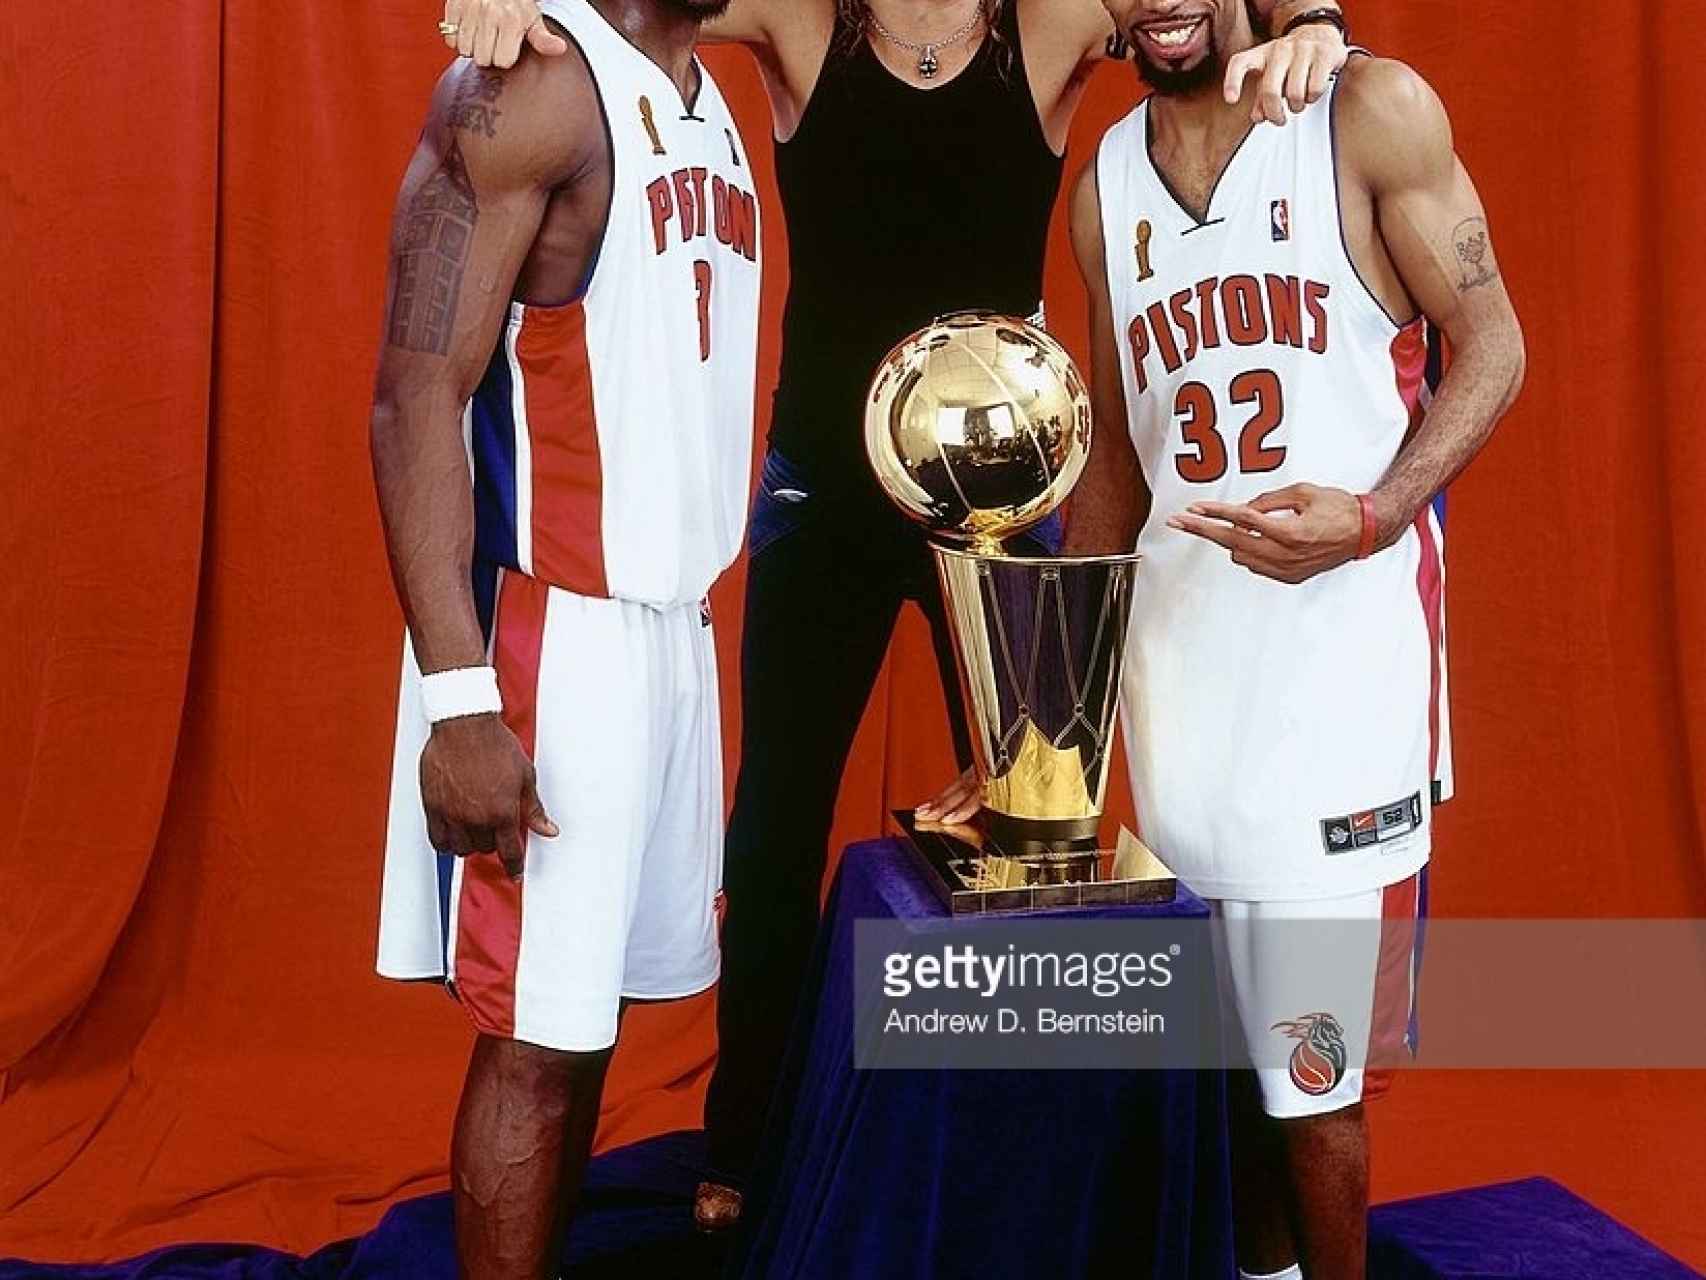 El cantante junto a los jugadores de Detroit Pistons, en la campaña de promoción del equipo.